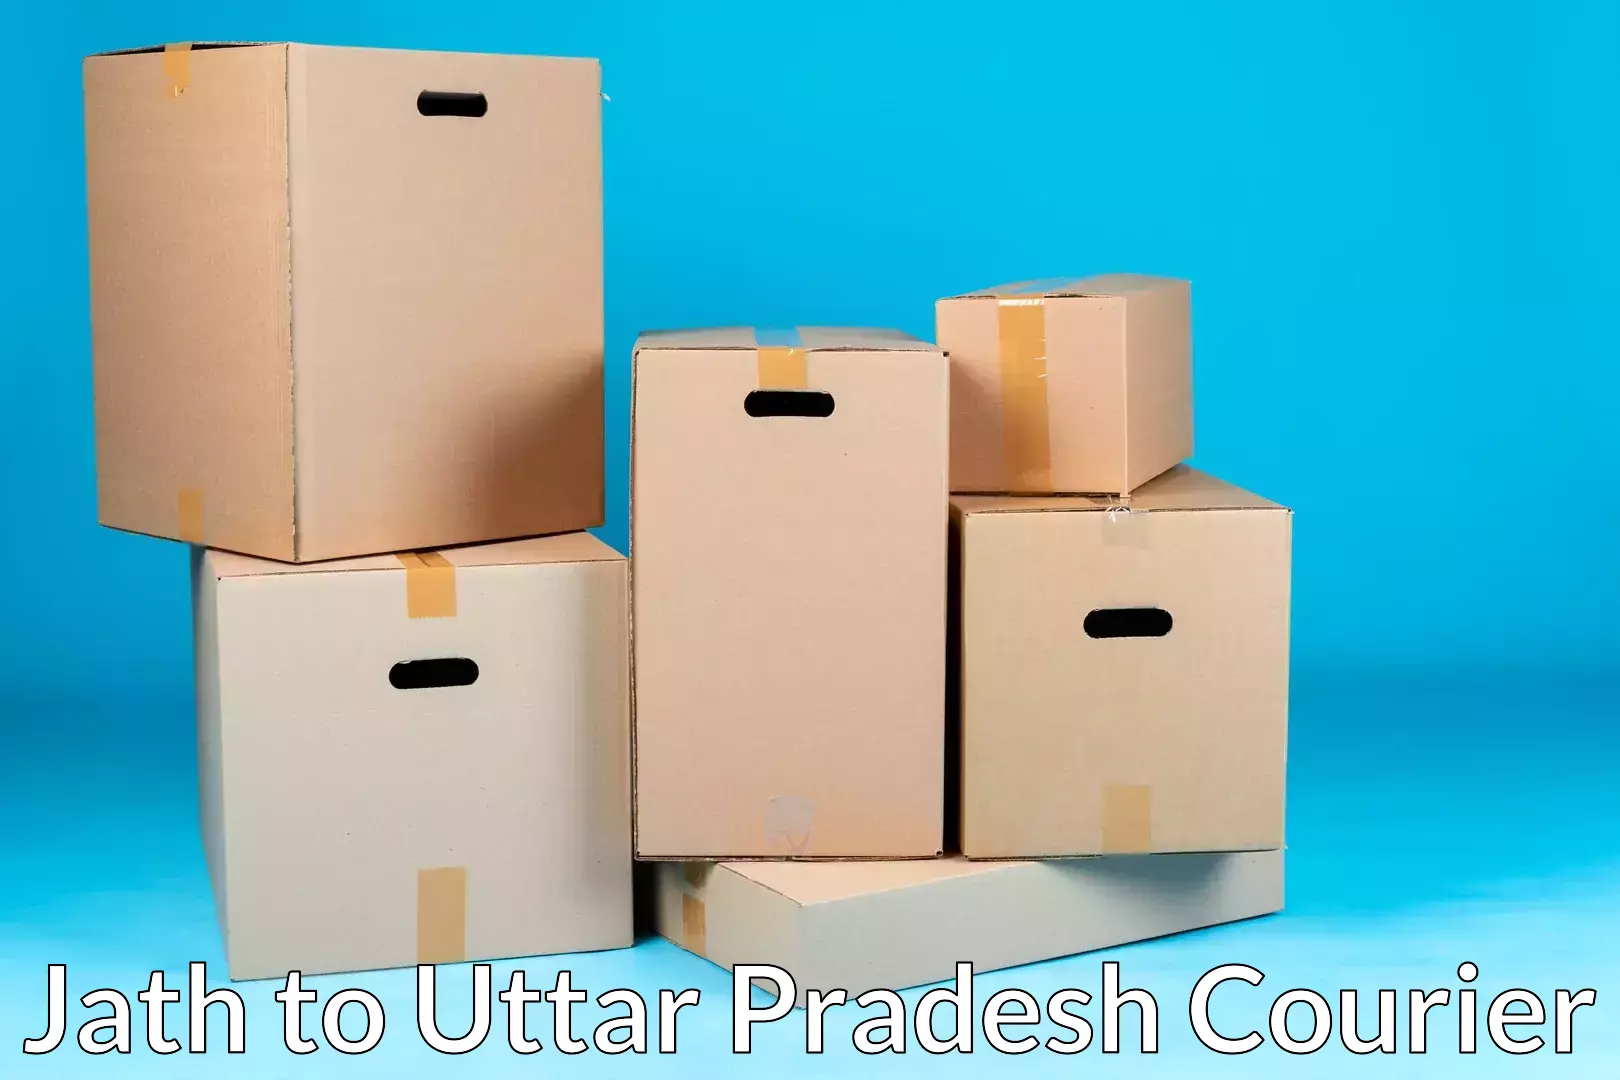 Premium moving services in Jath to Gorakhpur